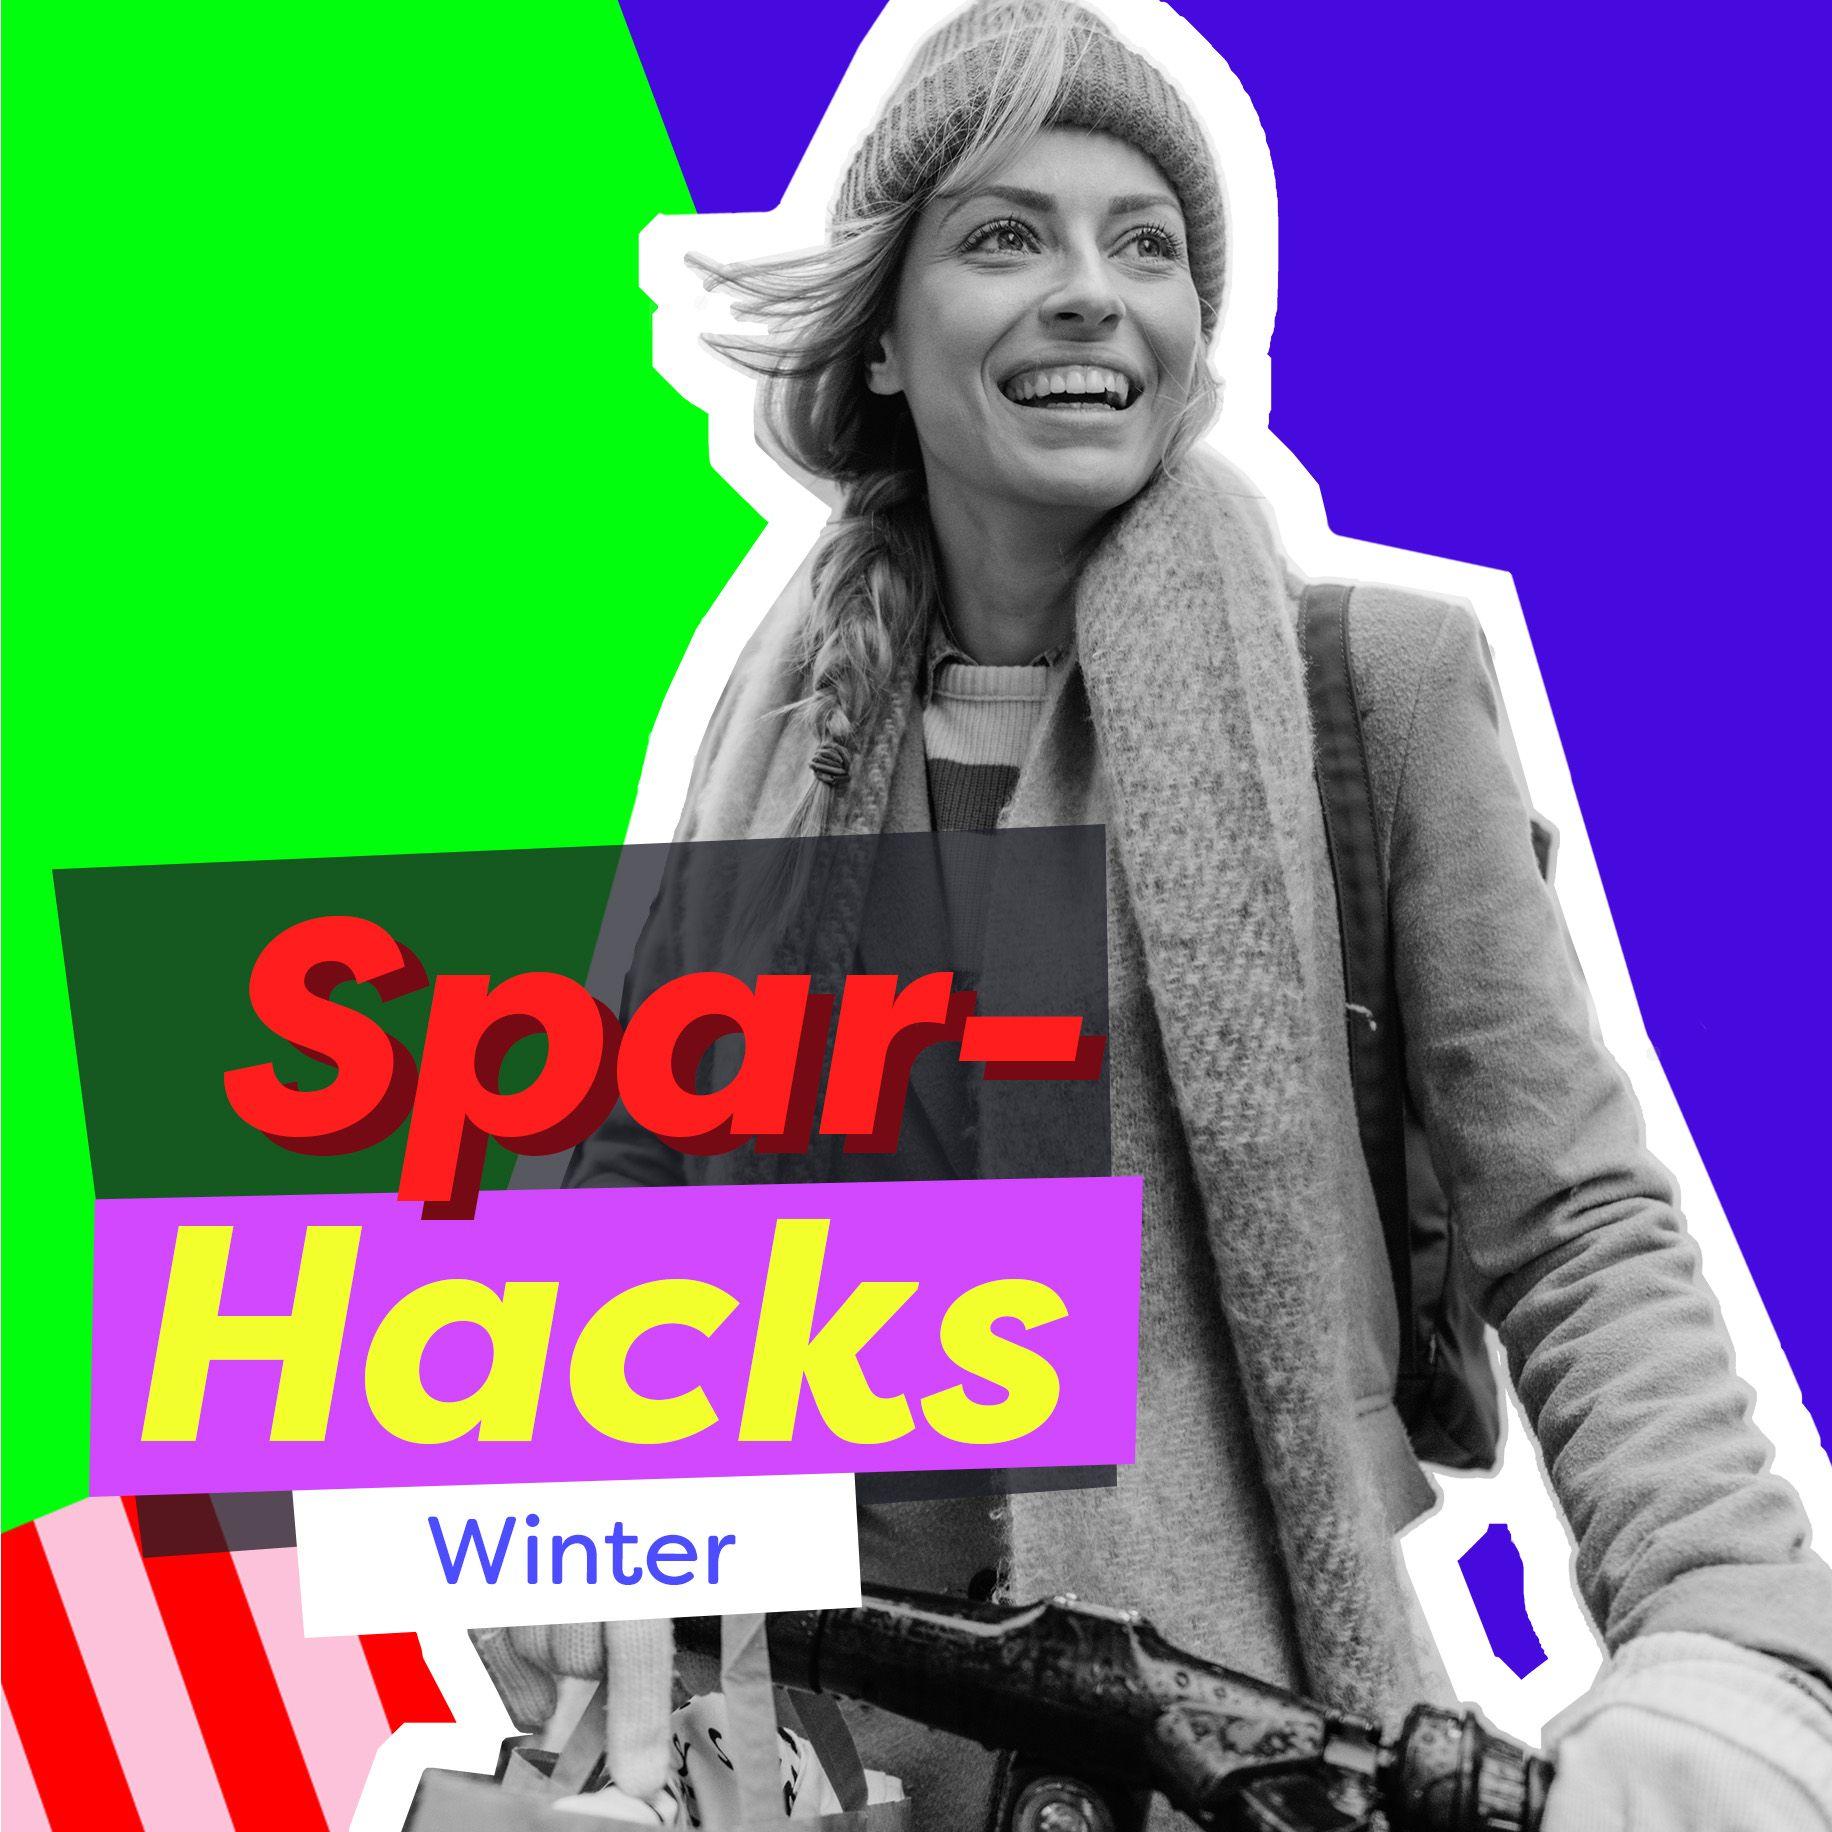 Collage mit einem bunten Hintergrund, einer Frau auf dem Fahrrad in Schwarz-weiß. Darauf liegt ein Schriftblock "Spar-Hacks Winter"